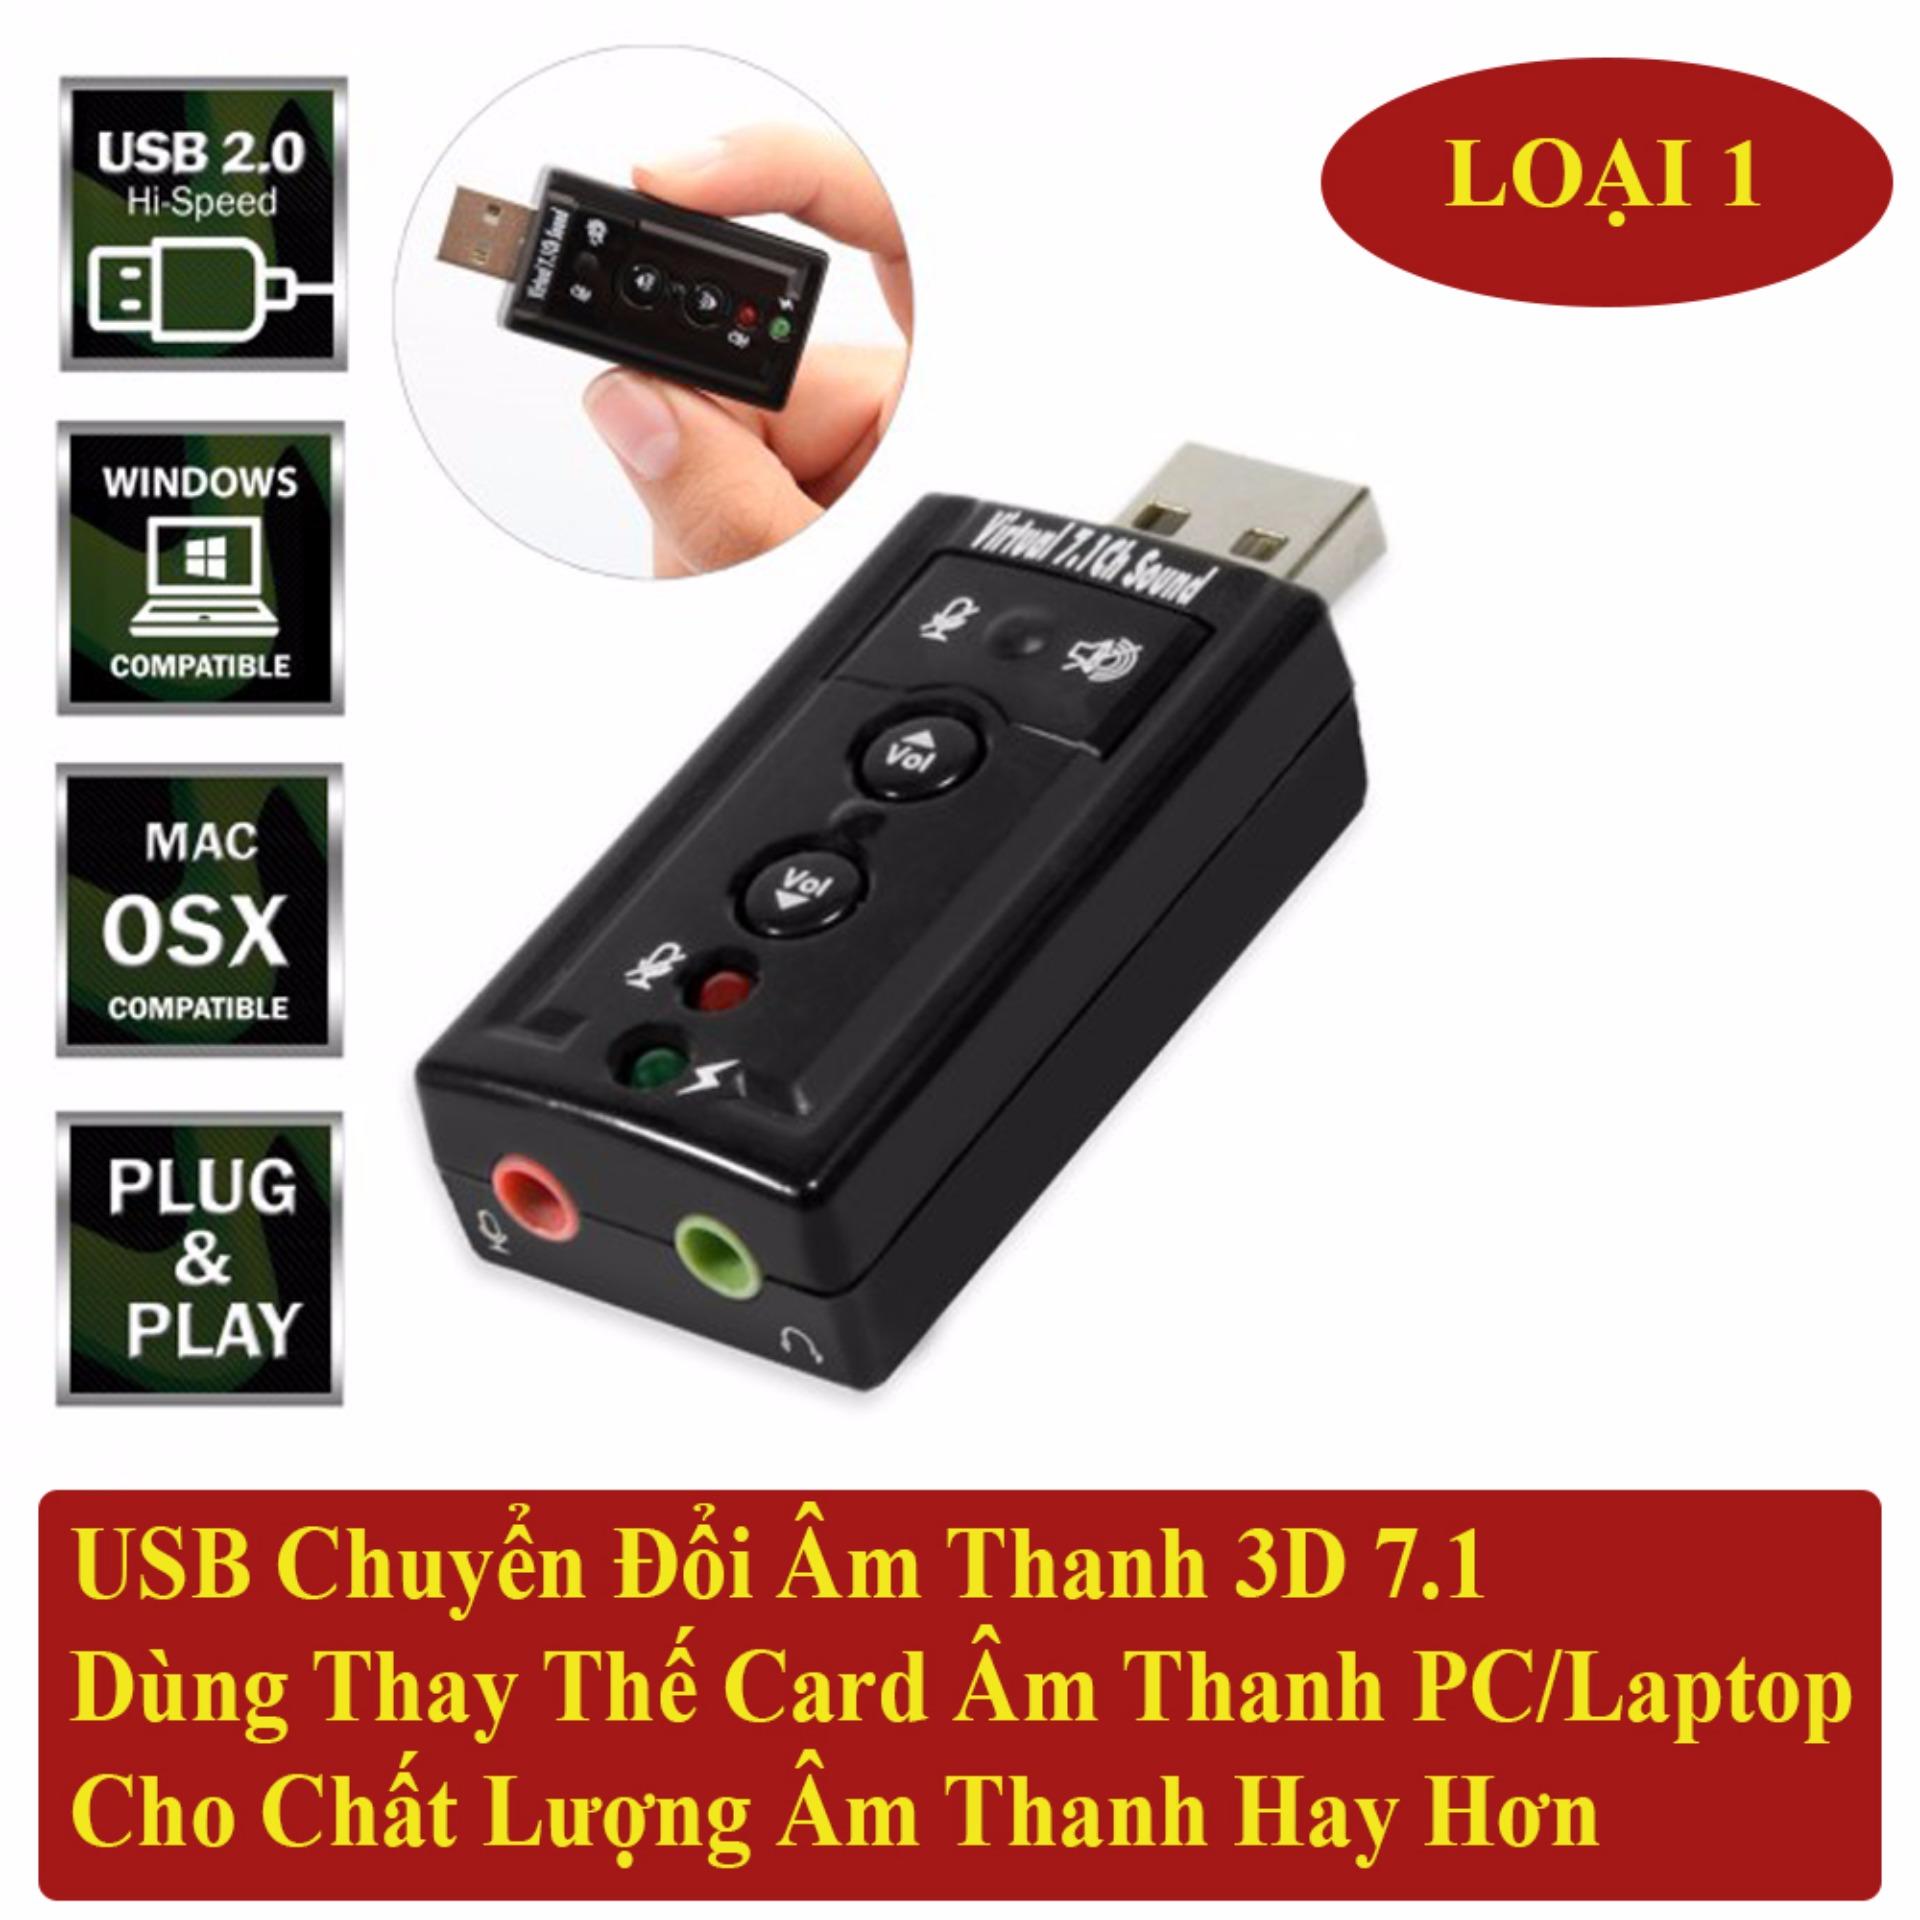 USB Sound Âm Thanh PC/Laptop Out Loa 3D 7.1